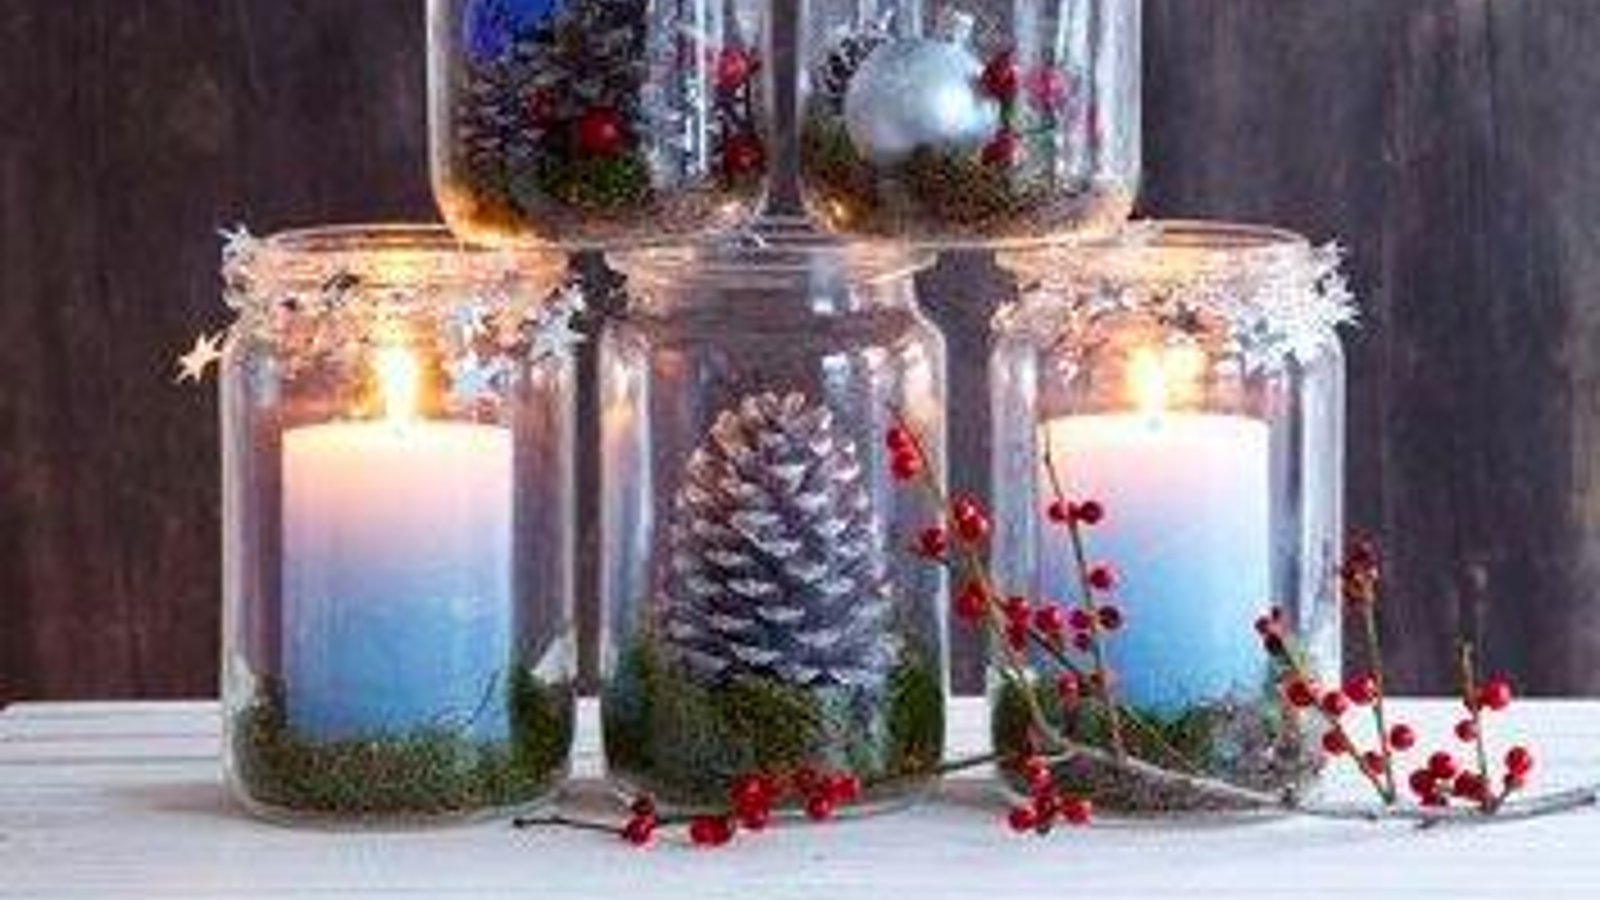 Fabriquez de jolies décorations hivernales avec des bocaux en verre!